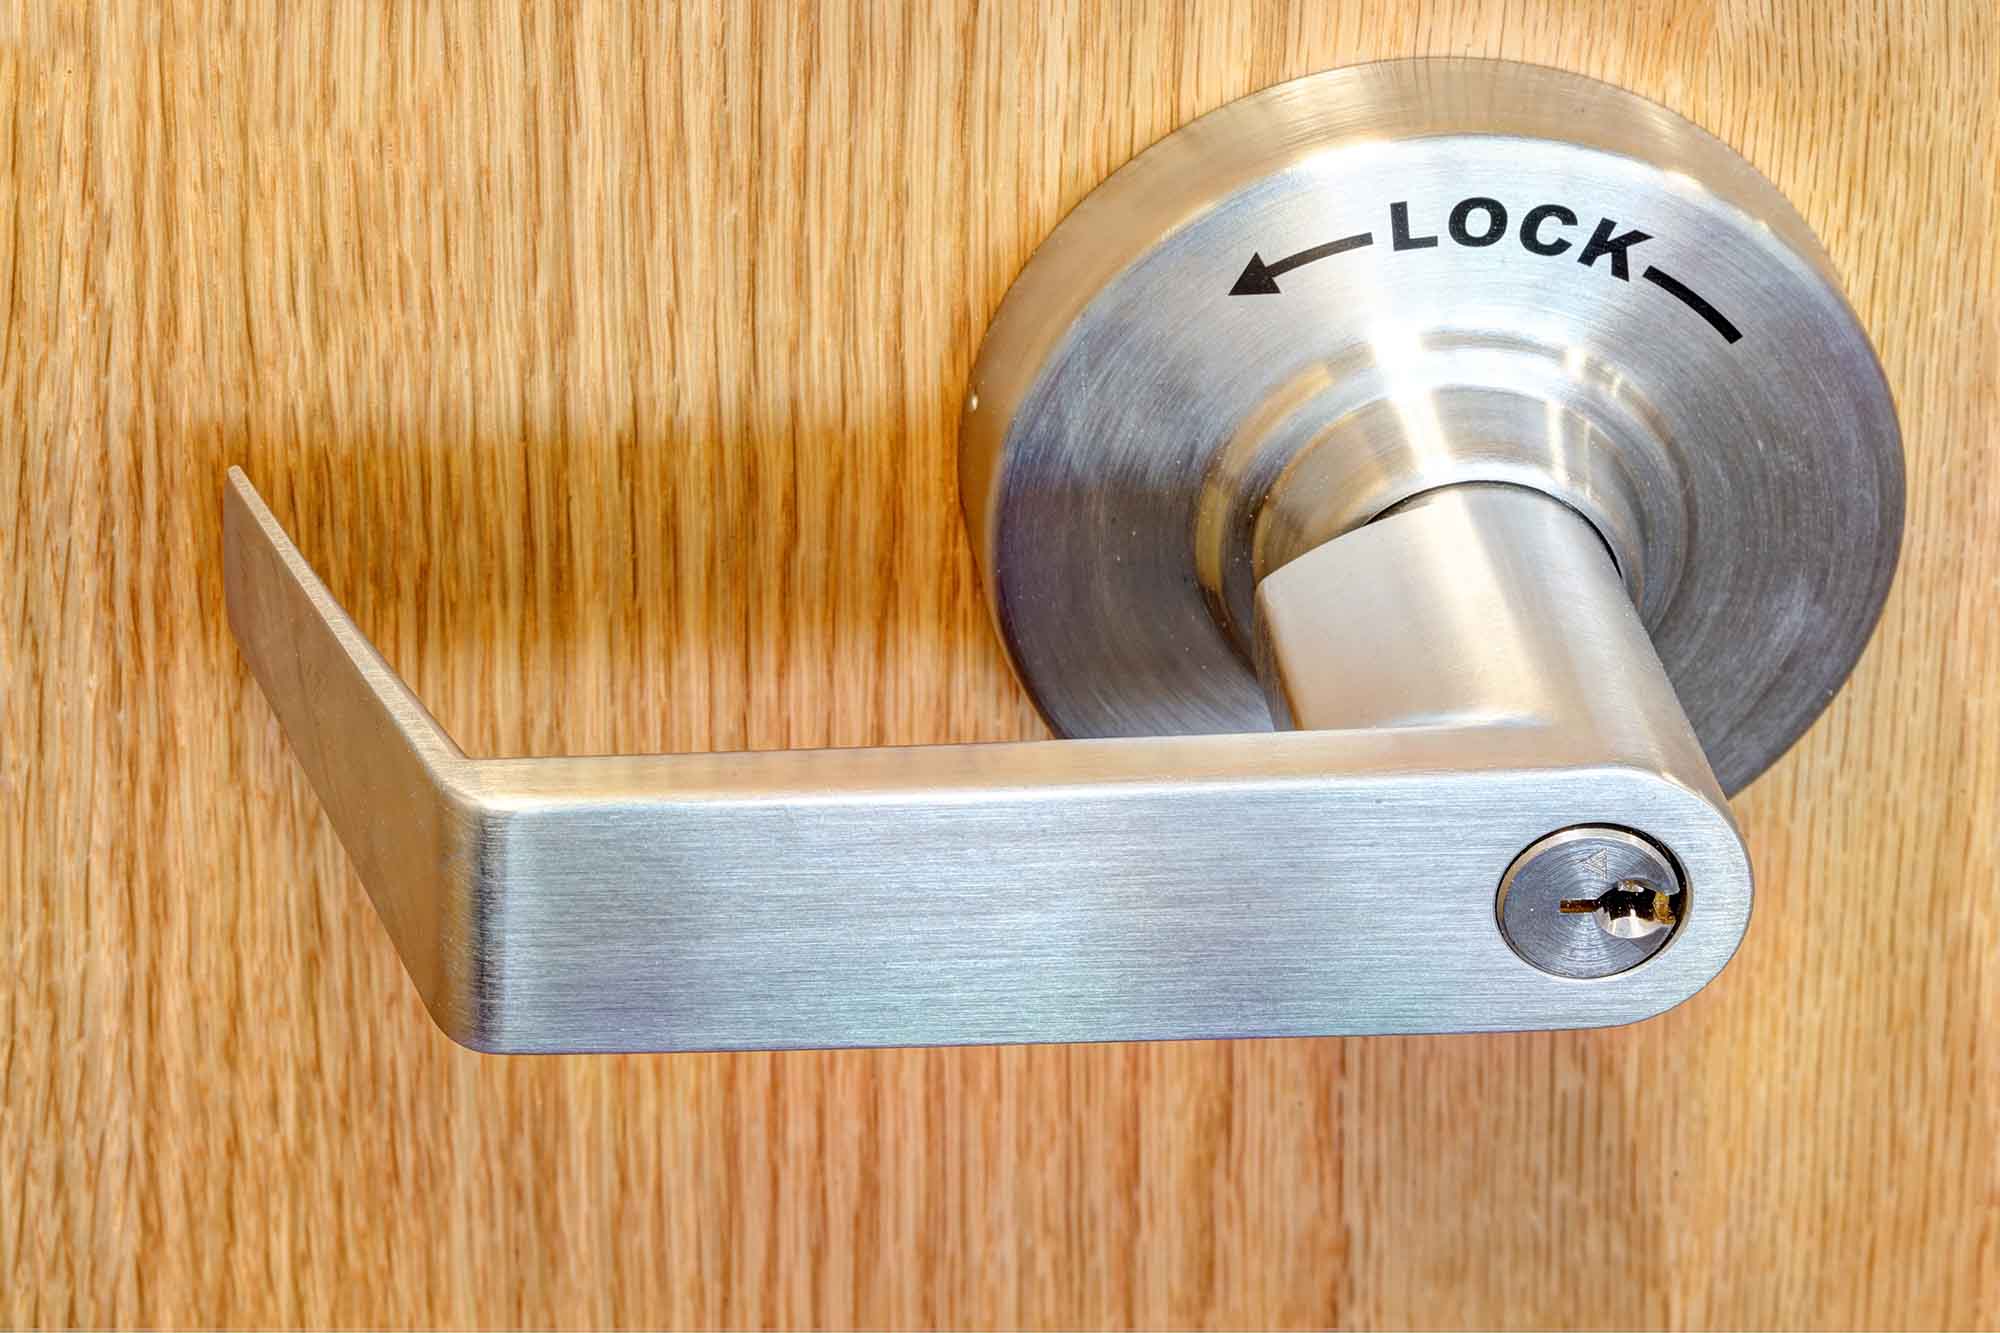 commercial door handle with word lock on it